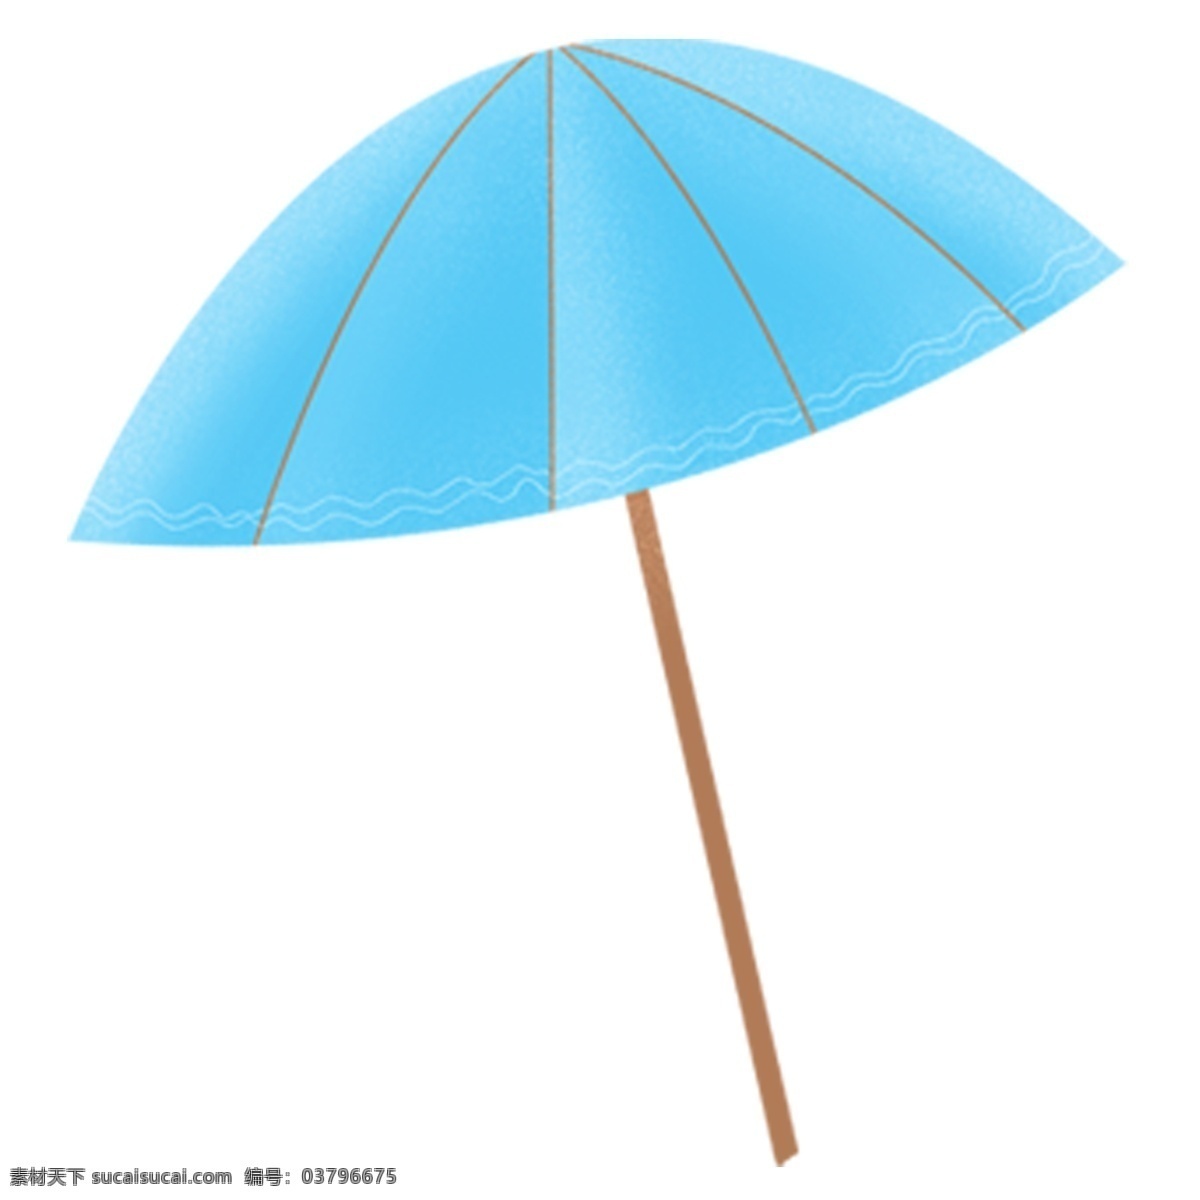 蓝色雨伞图案 蓝色 雨伞 伞 图案